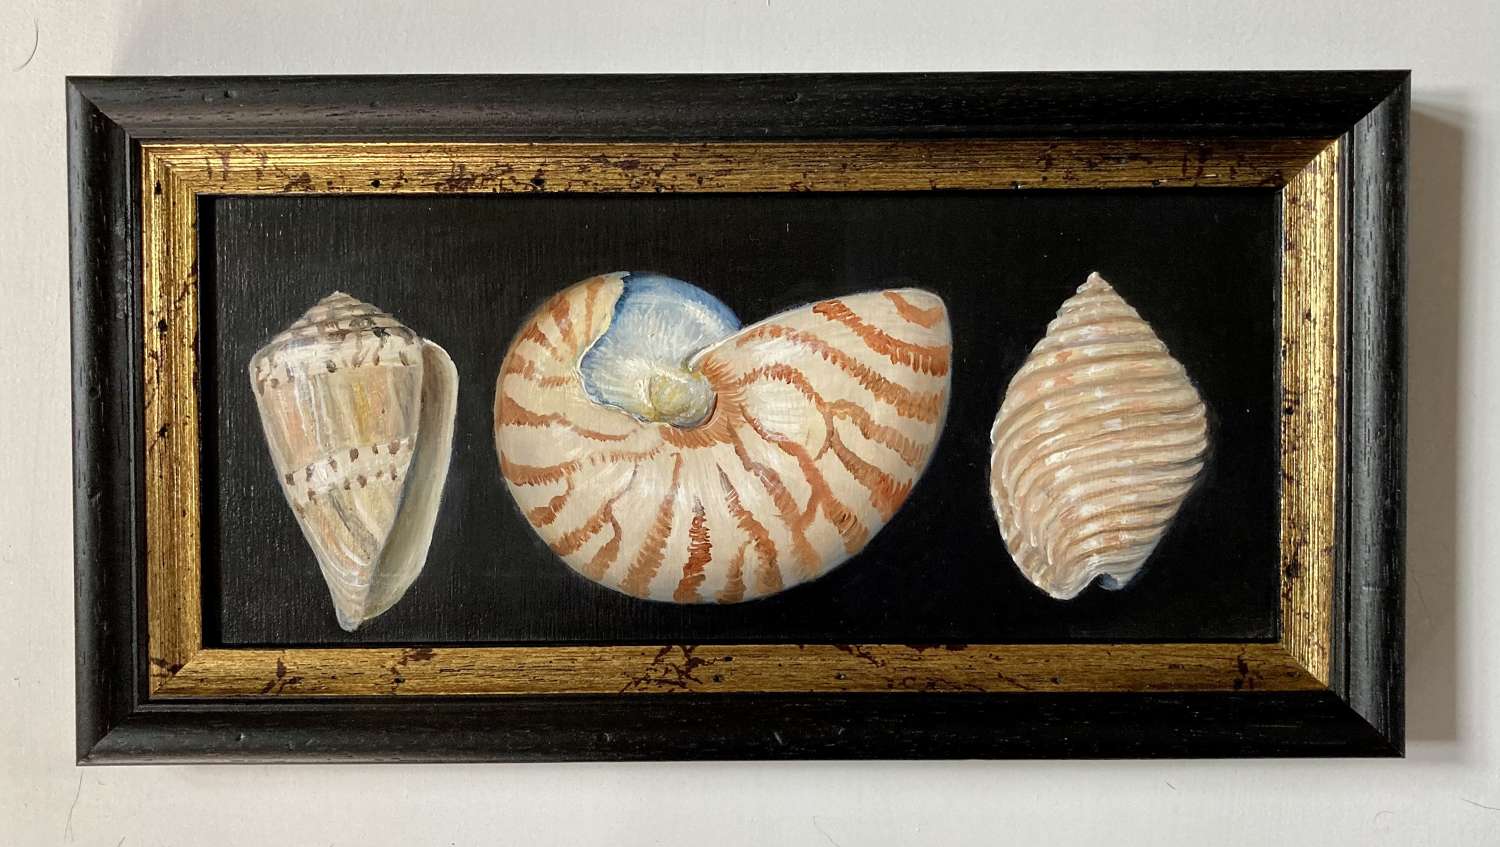 3 shells